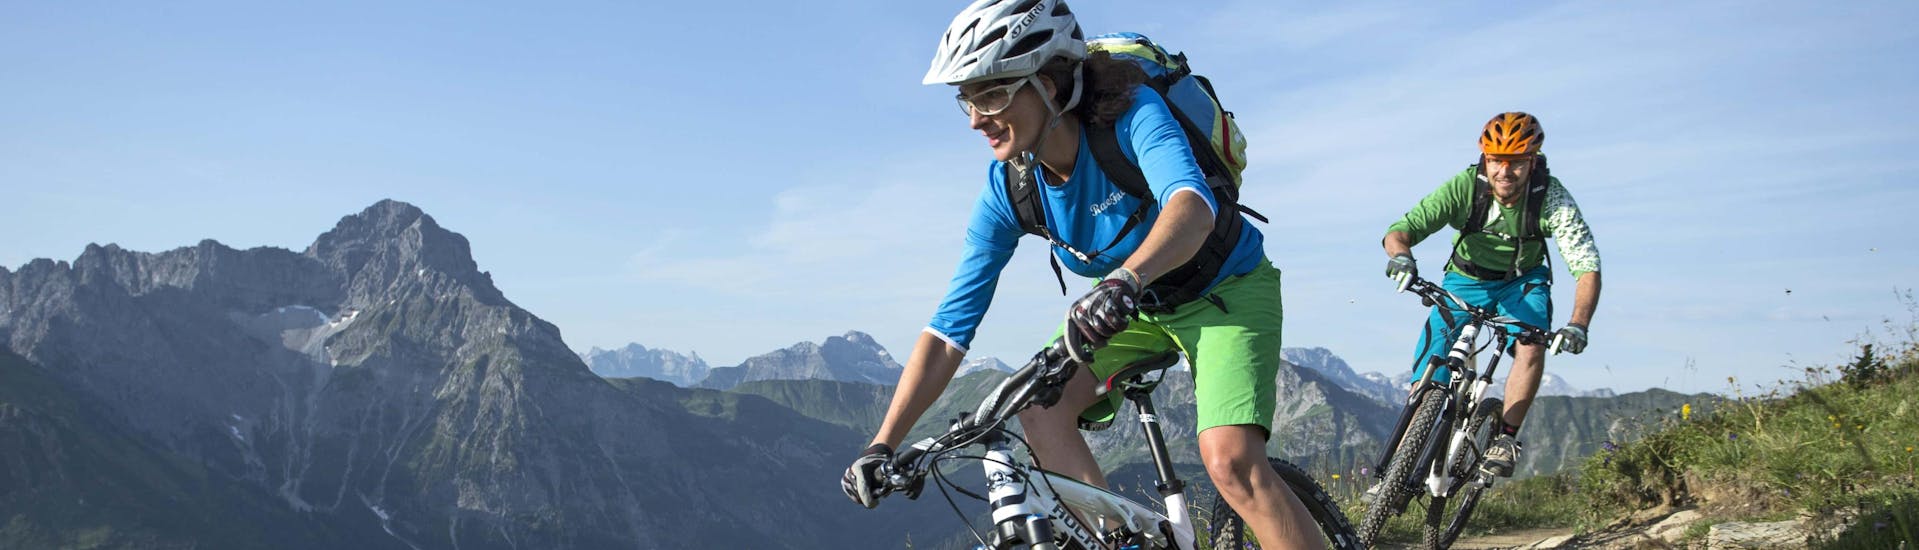 Mountain Biking (c) Shutterstock